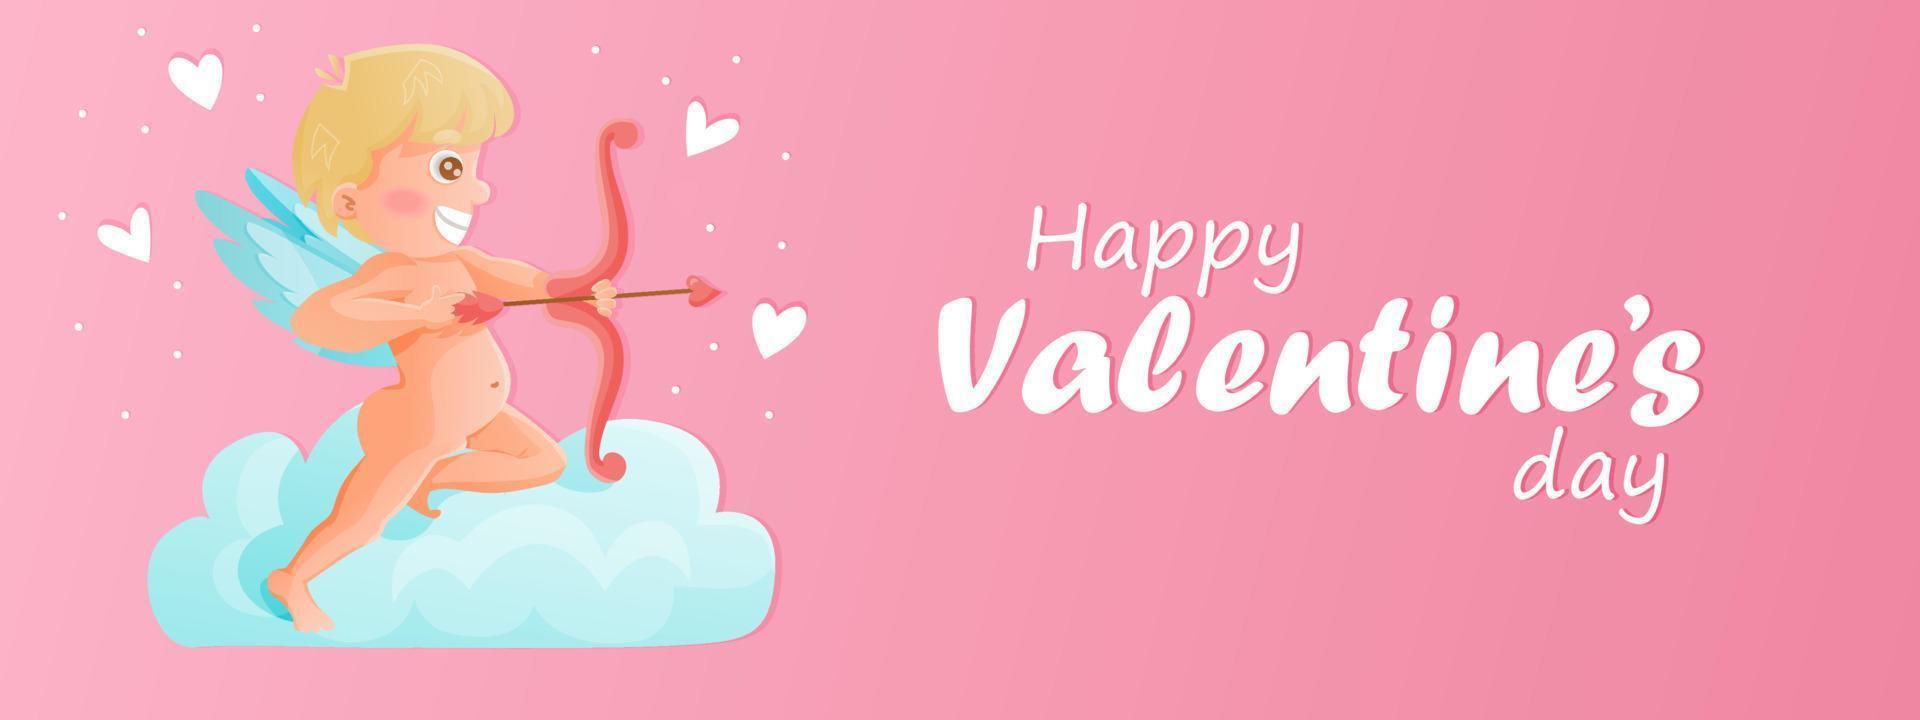 cartão de dia dos namorados ou design de banner com ilustração de cupido e coração voador. símbolo de amor. vetor